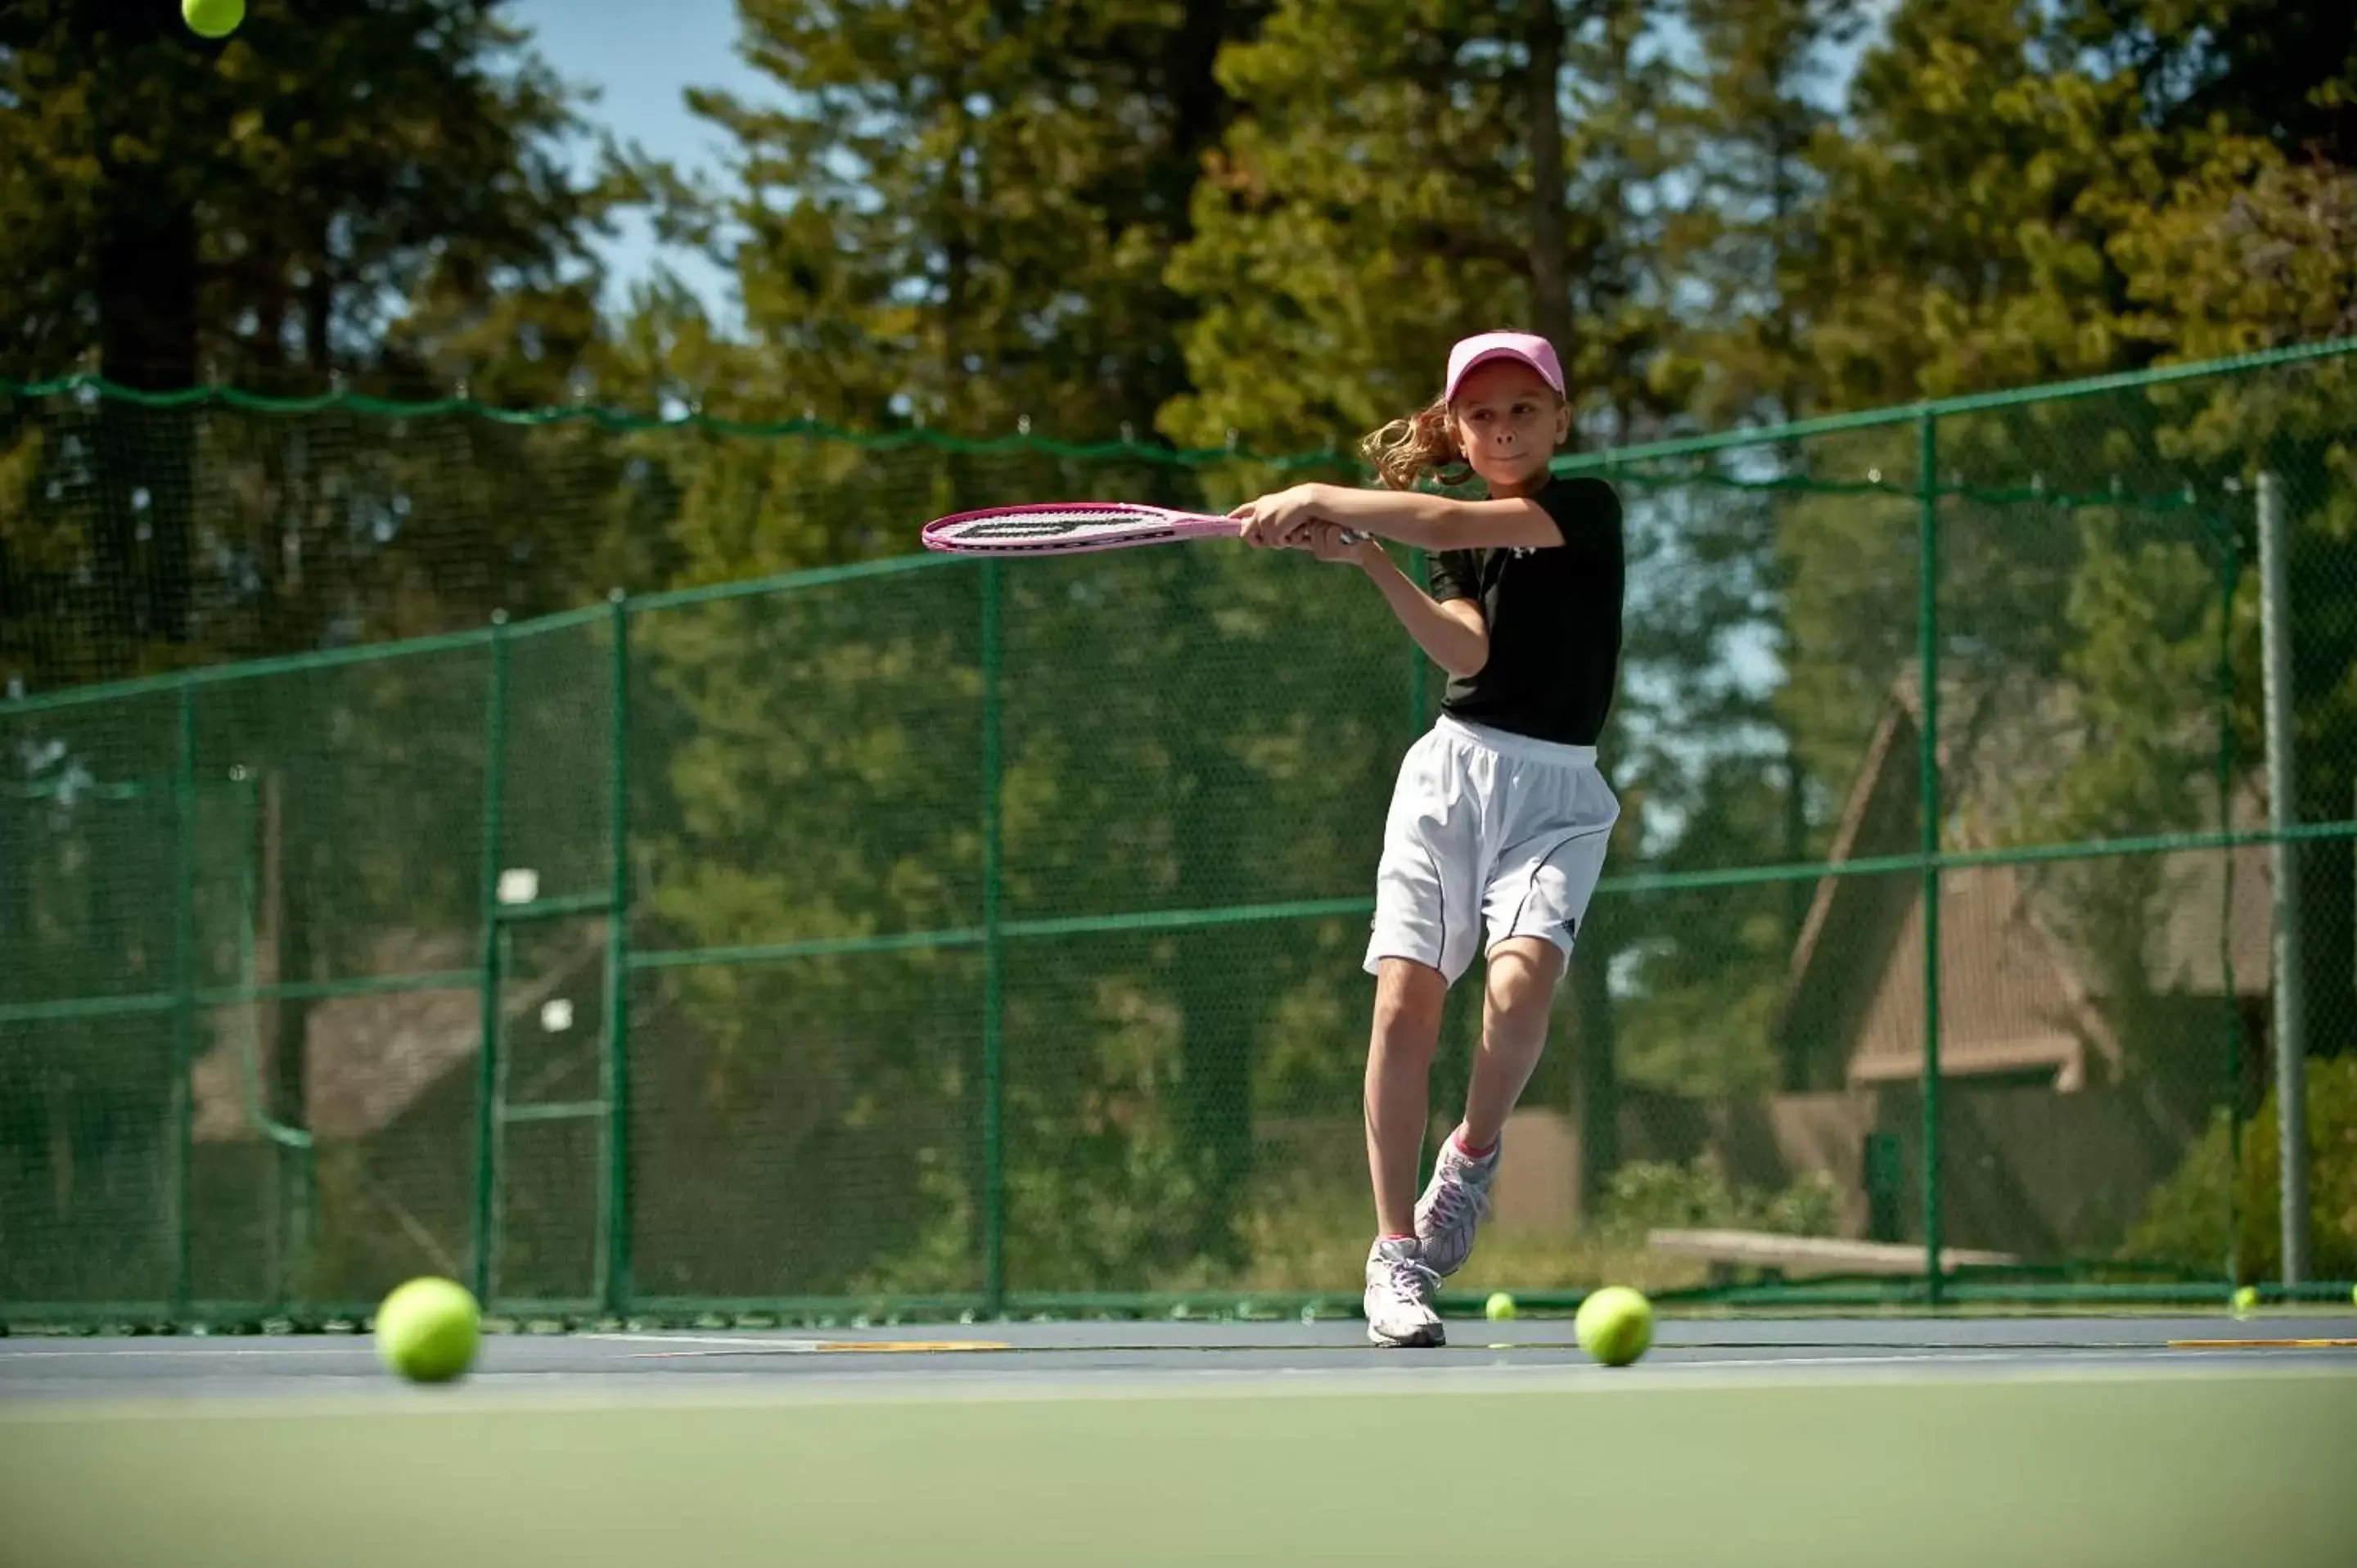 Tennis court, Other Activities in Sunriver Resort